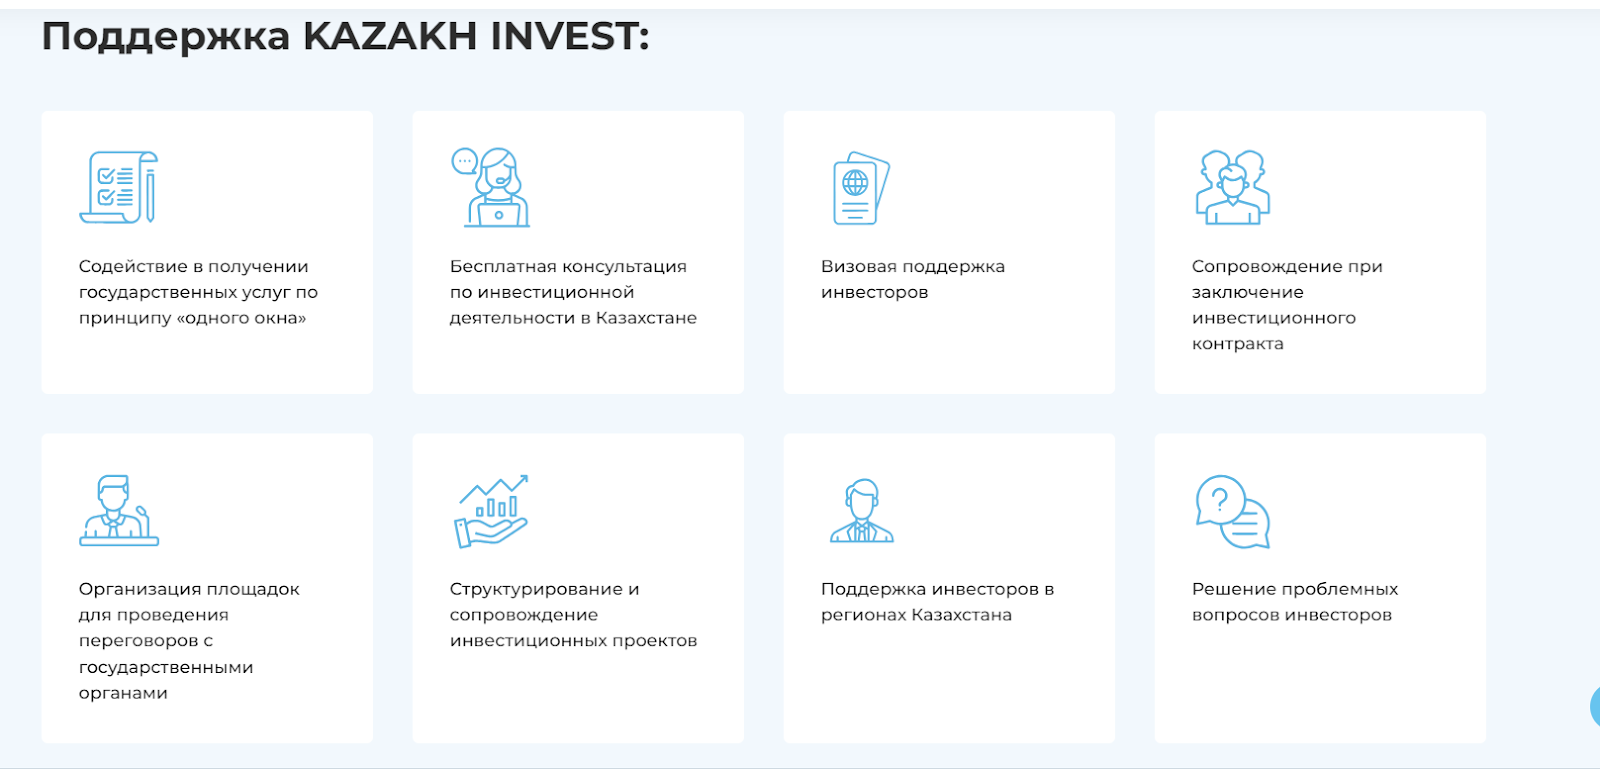 национальная компания kazakh invest